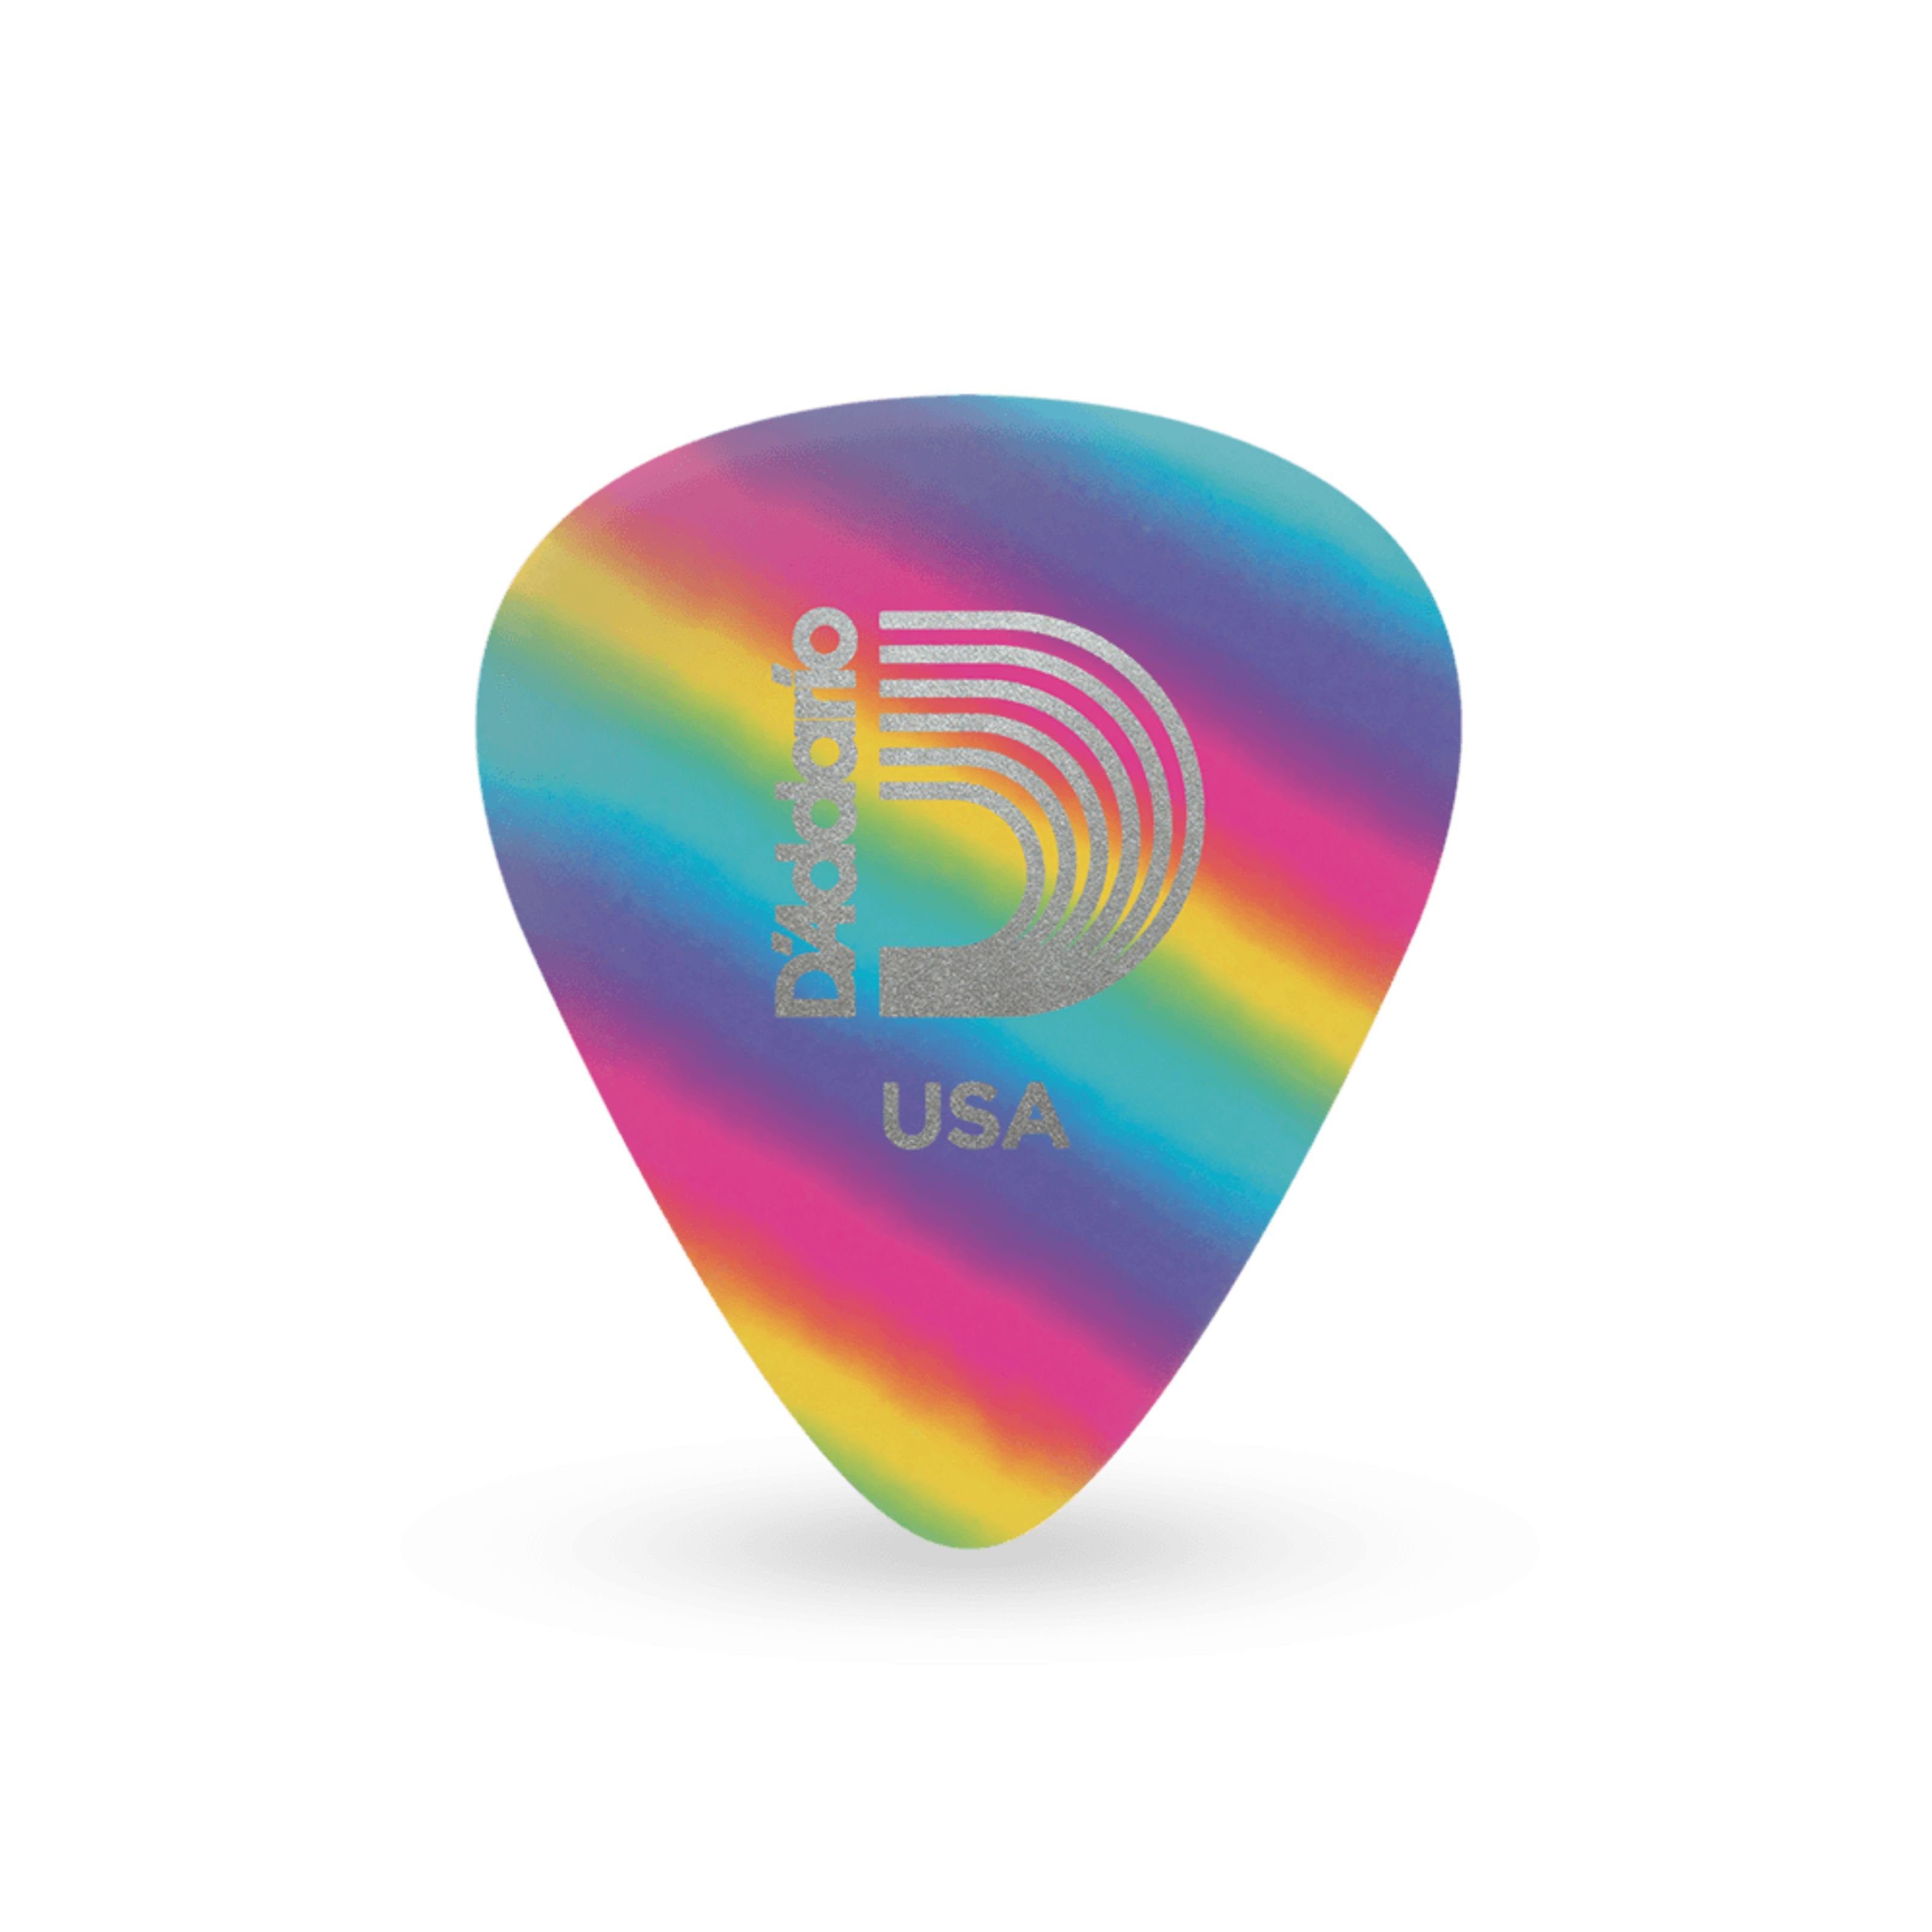 Daddario Spielzeug-Musikinstrument, 1CRB6-10 Rainbow Picks 10-Pack 1,00 mm - Plektren Set